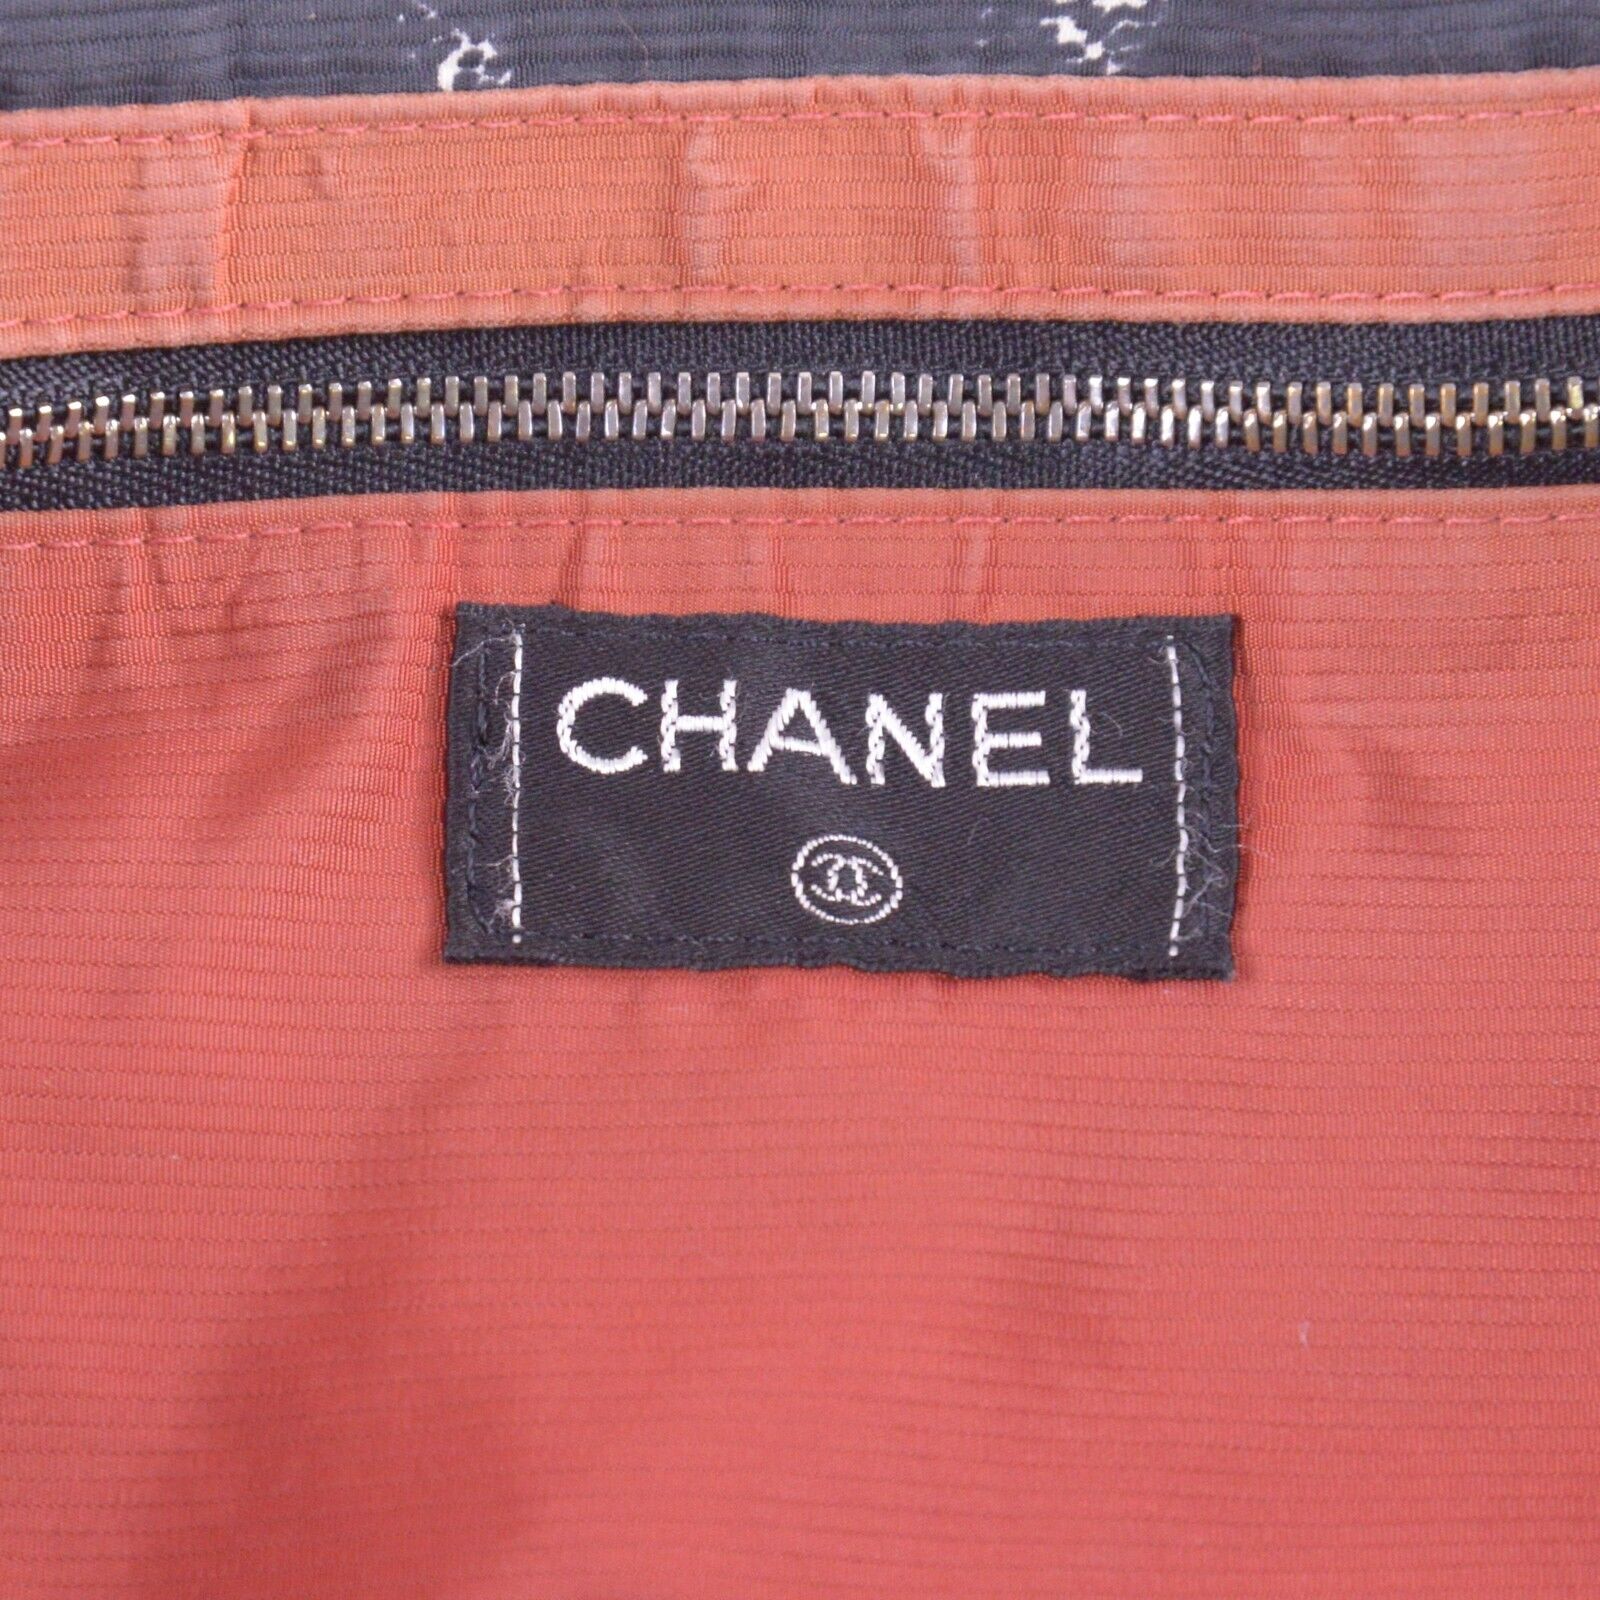 Chanel Old Travel Line Tote Bag Black